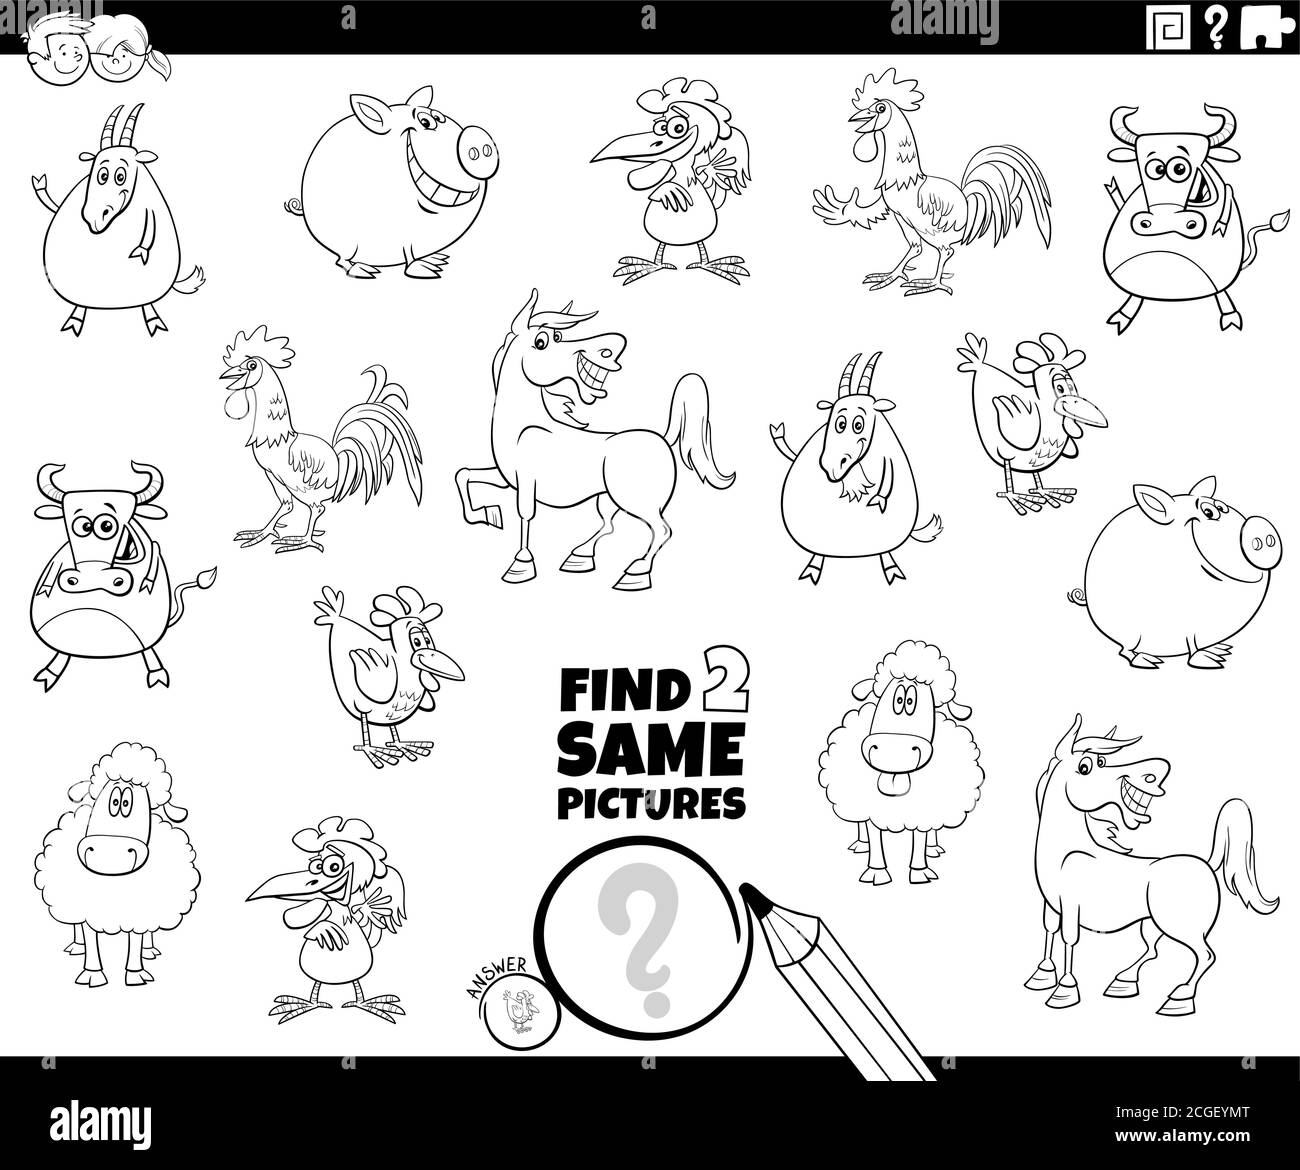 Dessin animé noir et blanc Illustration de la recherche de deux images identiques Livre de coloriage pour les enfants avec des personnages d'animaux de ferme Page Illustration de Vecteur